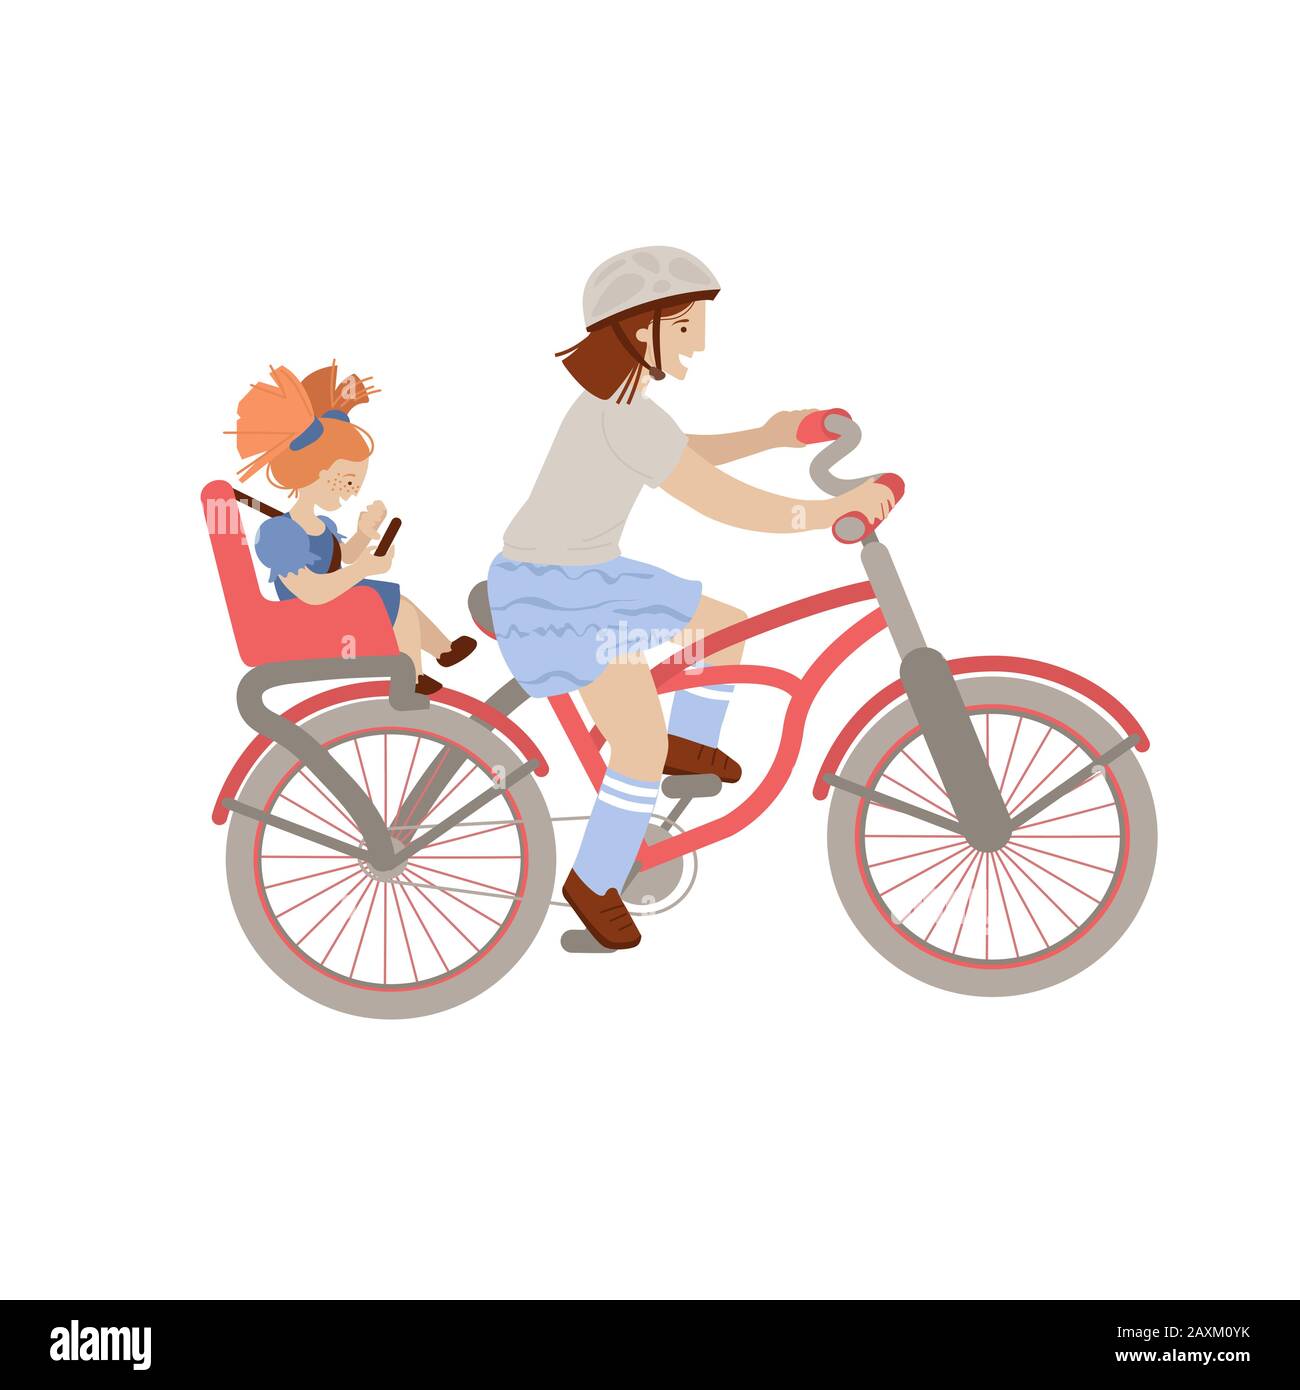 Jolie jeune fille ou adolescente qui monte un vélo avec une petite fille  sur le siège de vélo pour enfant à l'arrière, siège porte-bébé. Deux filles,  enfants à vélo - vecteur Image